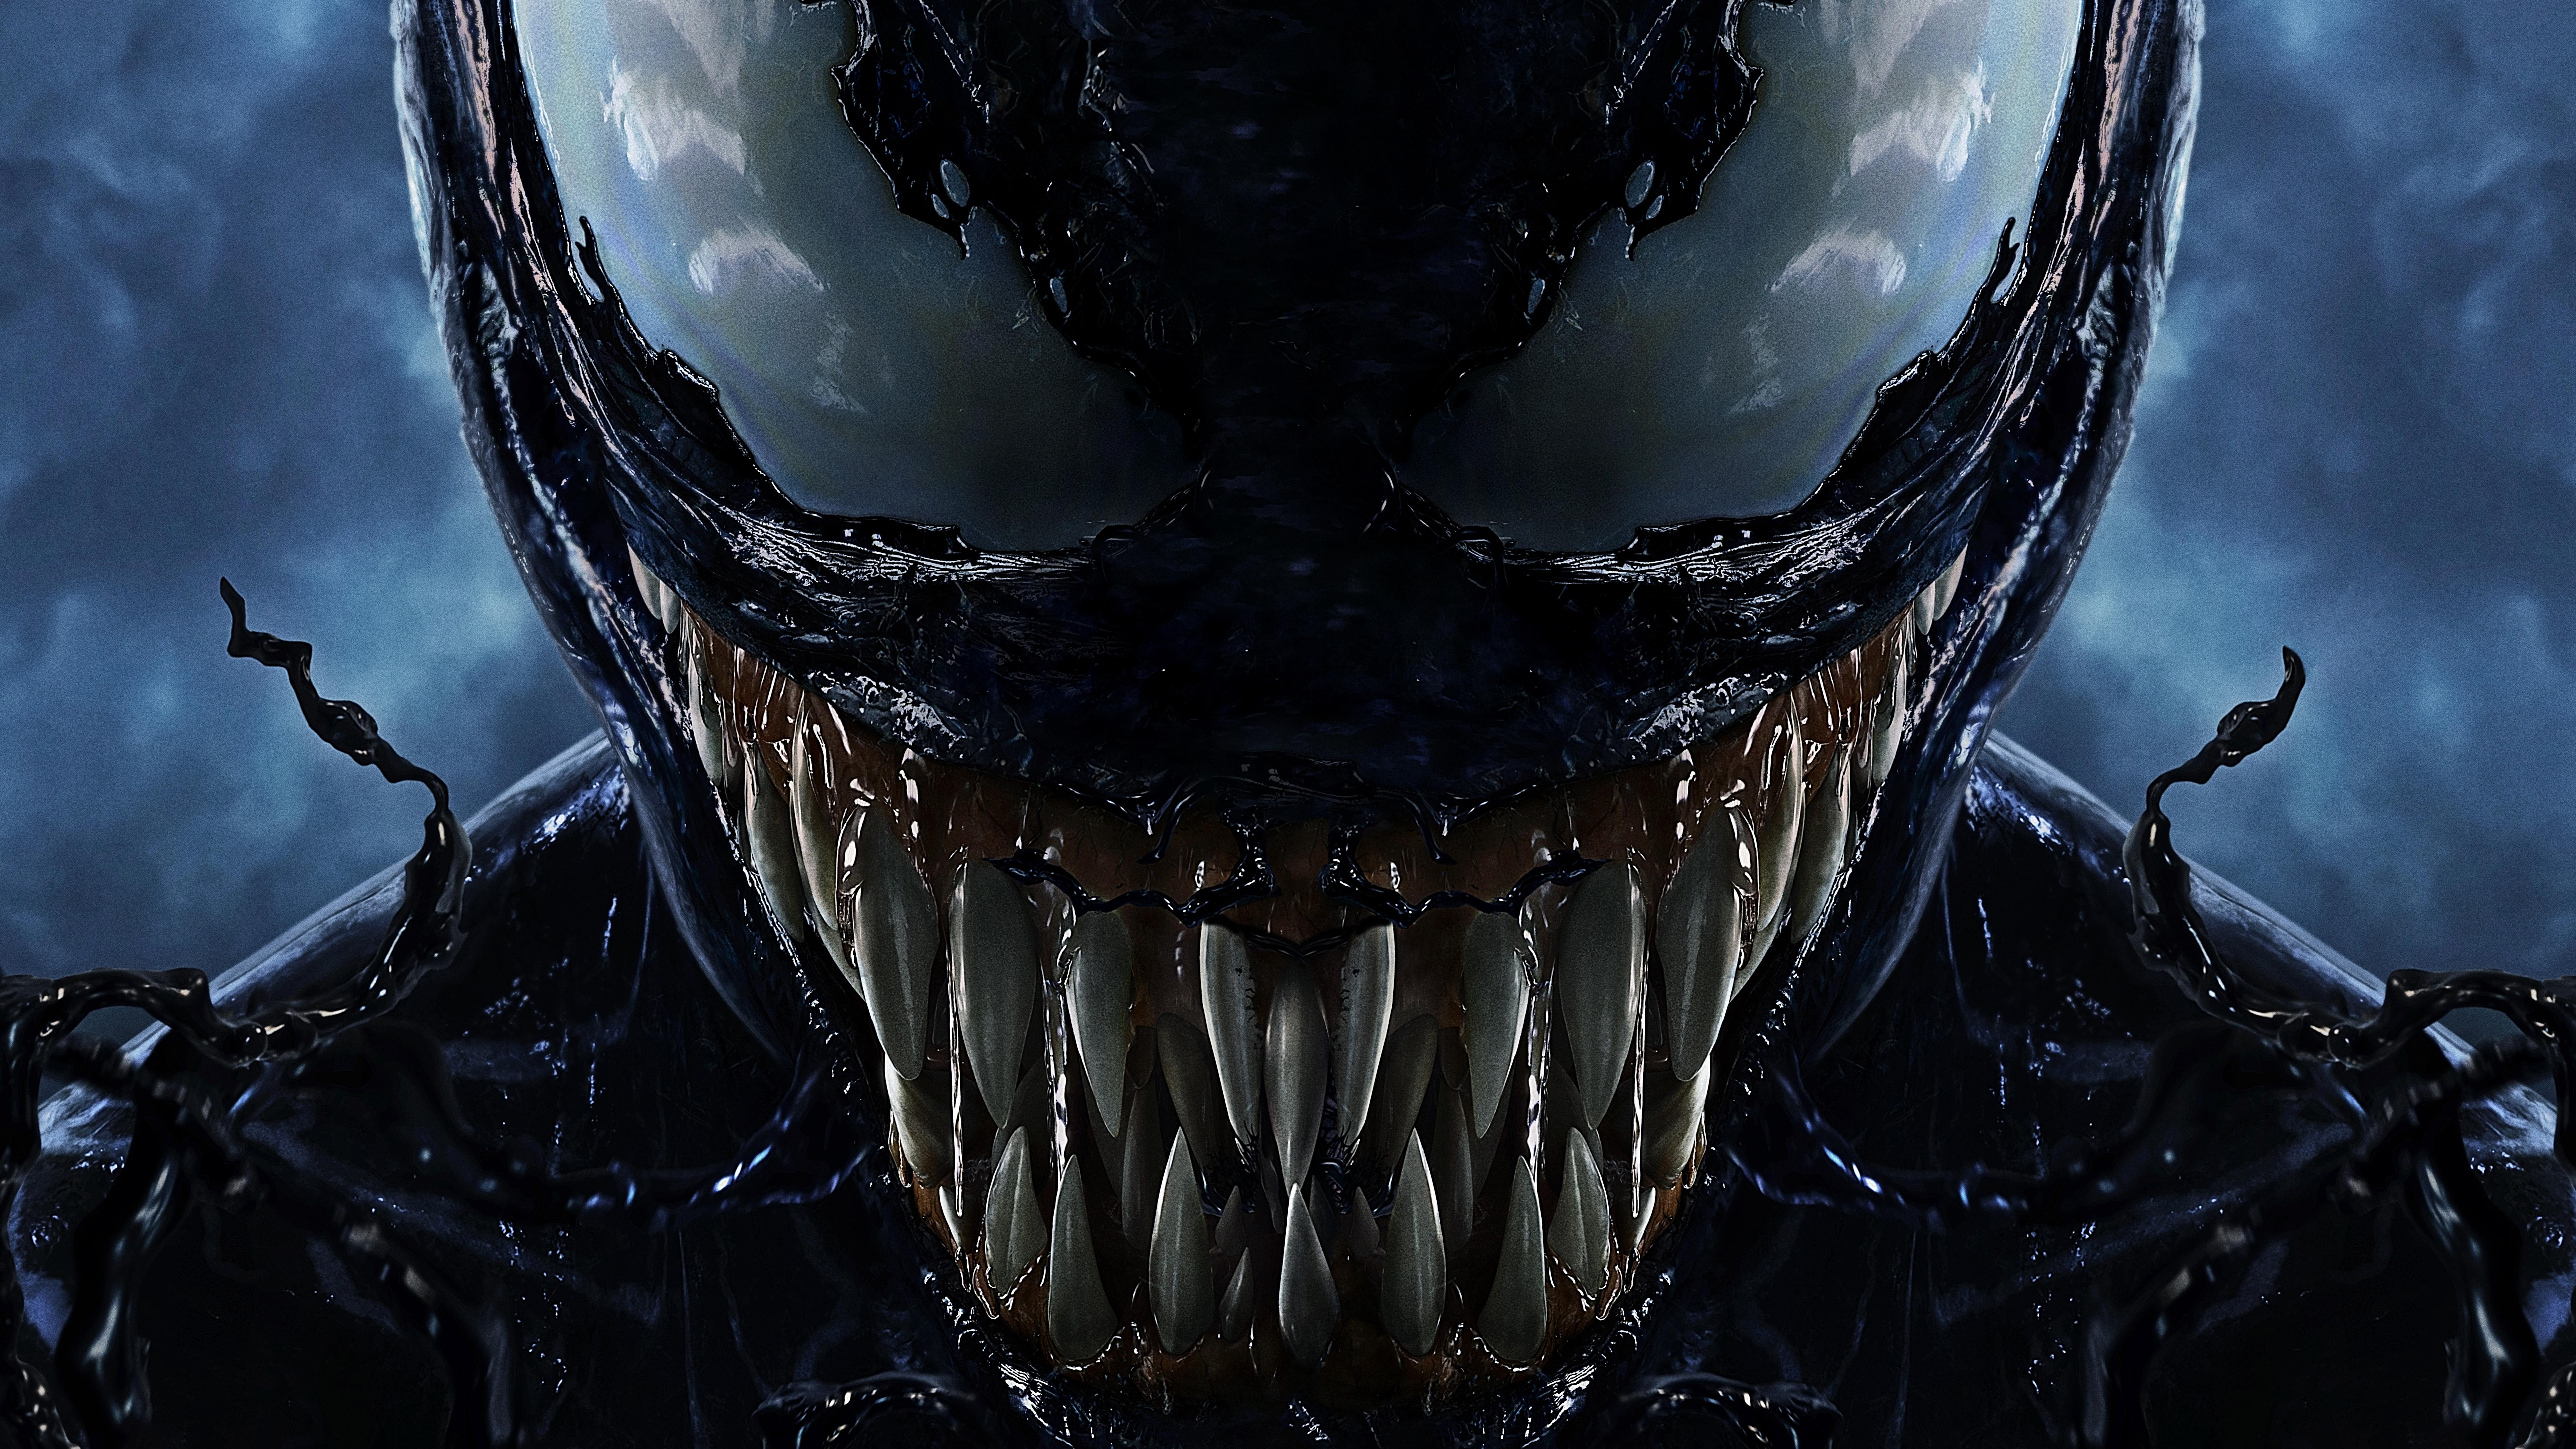 7680 x 4320 · jpeg - Venom 8k Ultra HD Wallpaper | Background Image | 7680x4320 | ID:946735 ...